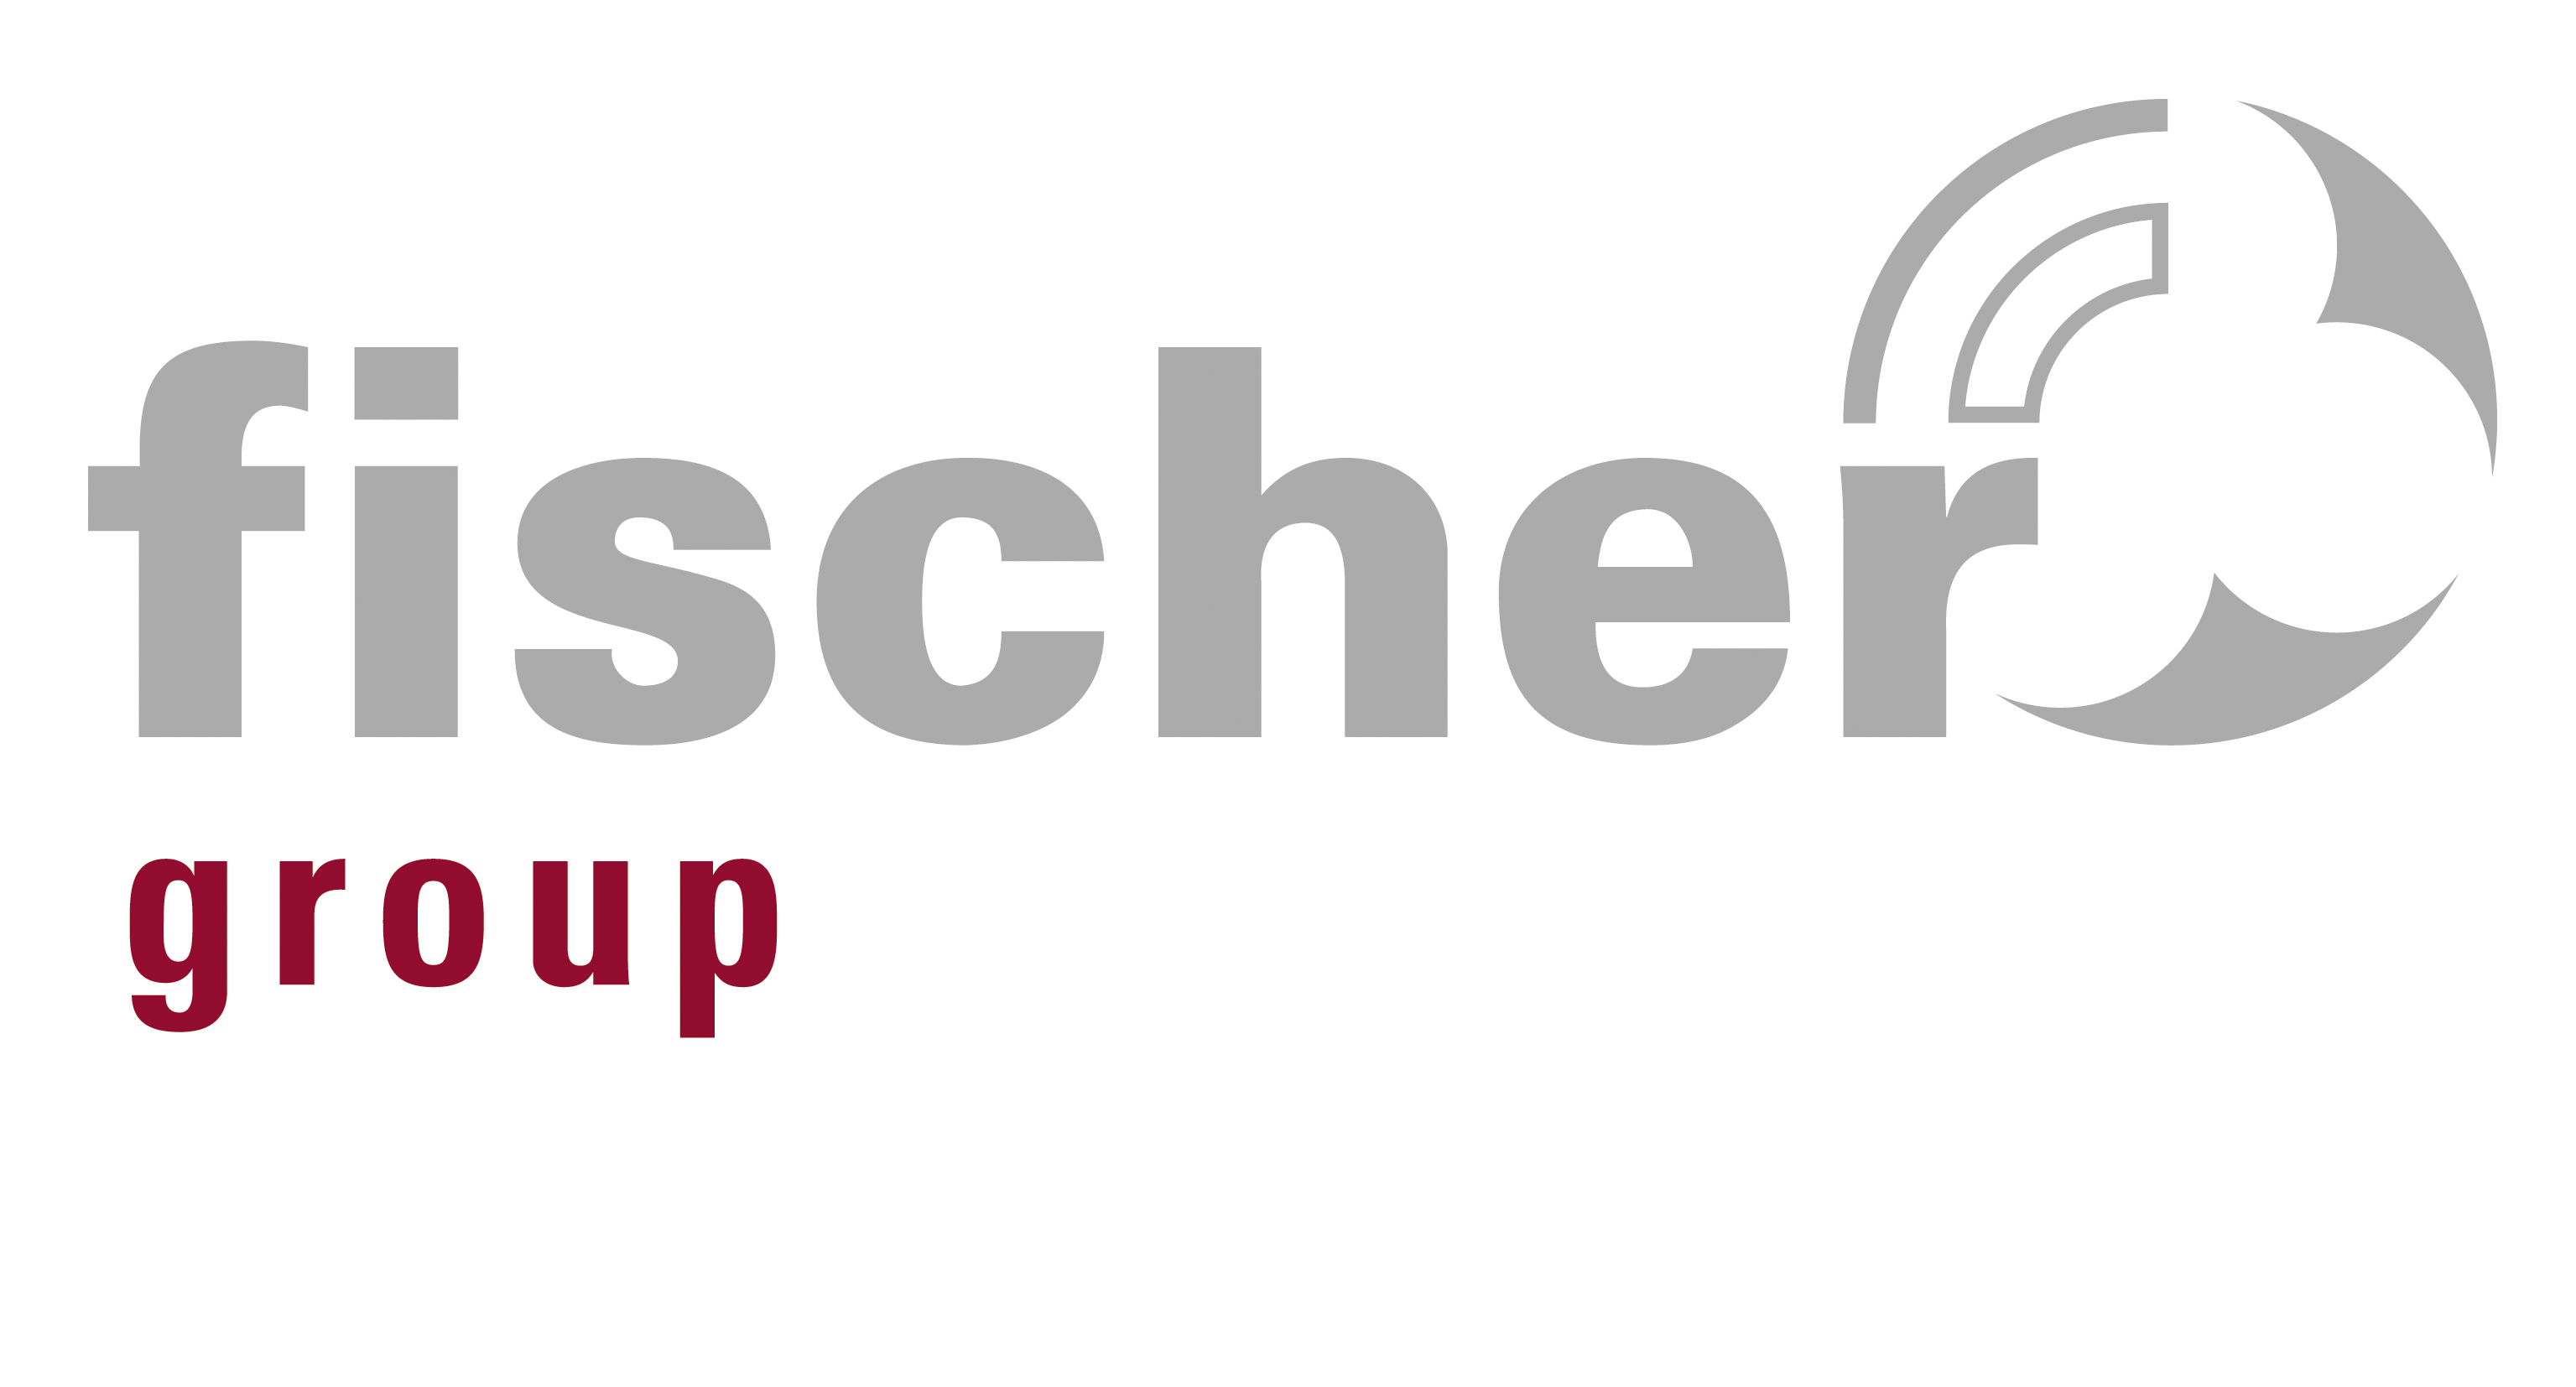                                                     Fischer Group                                    